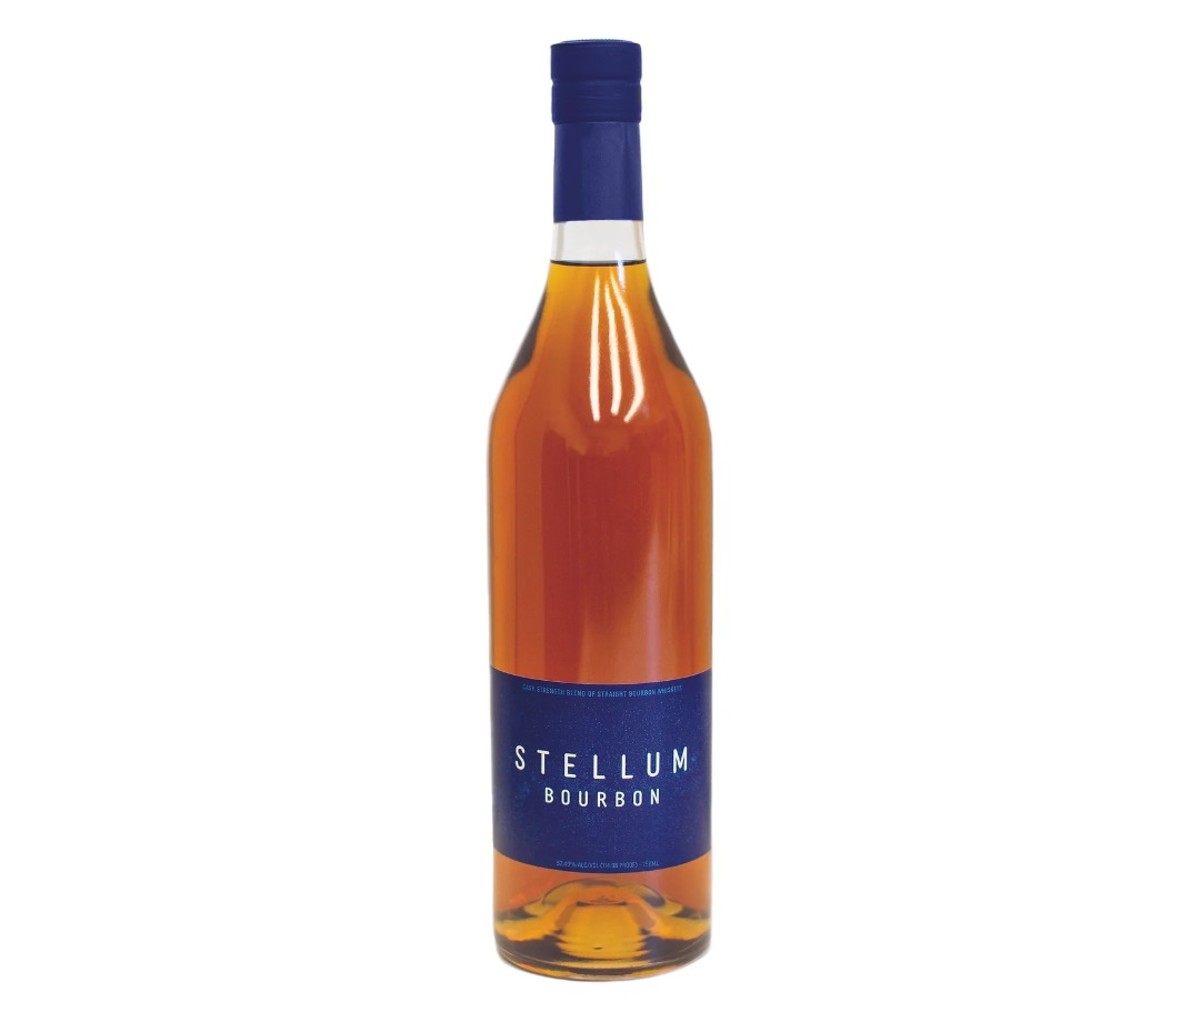 A bottle of Stellum Bourbon